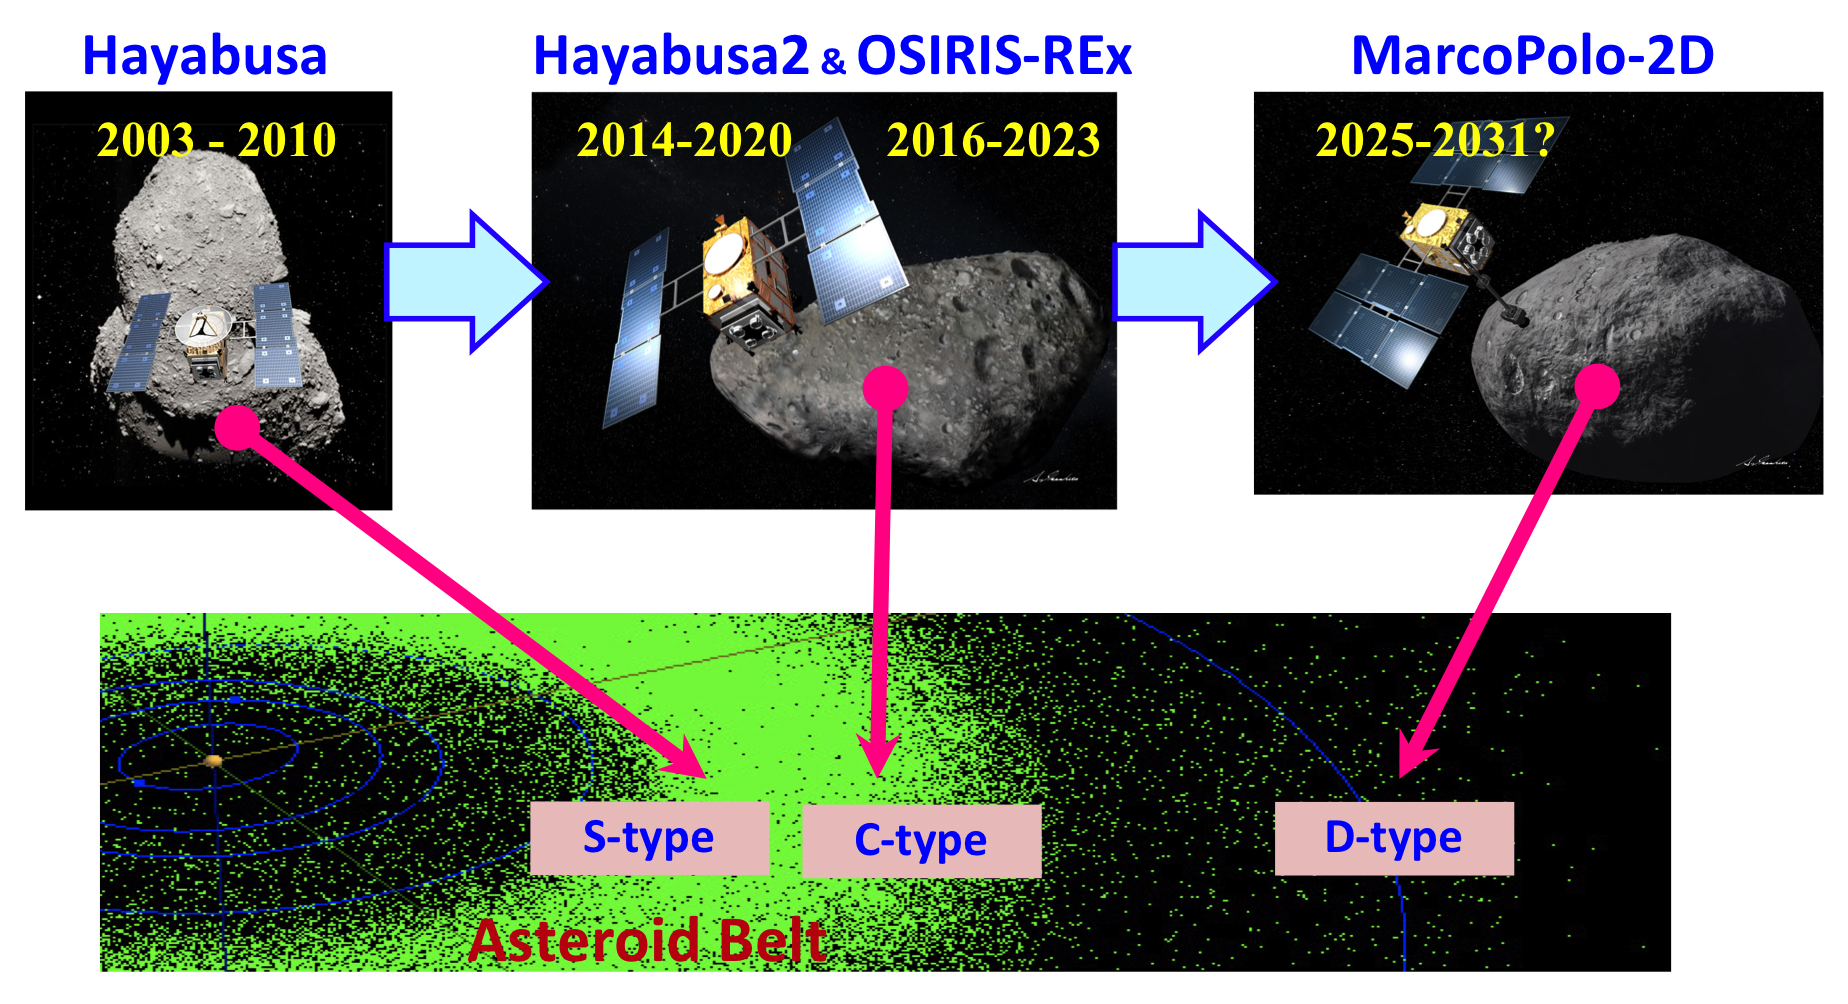 Asteroid sample return missions